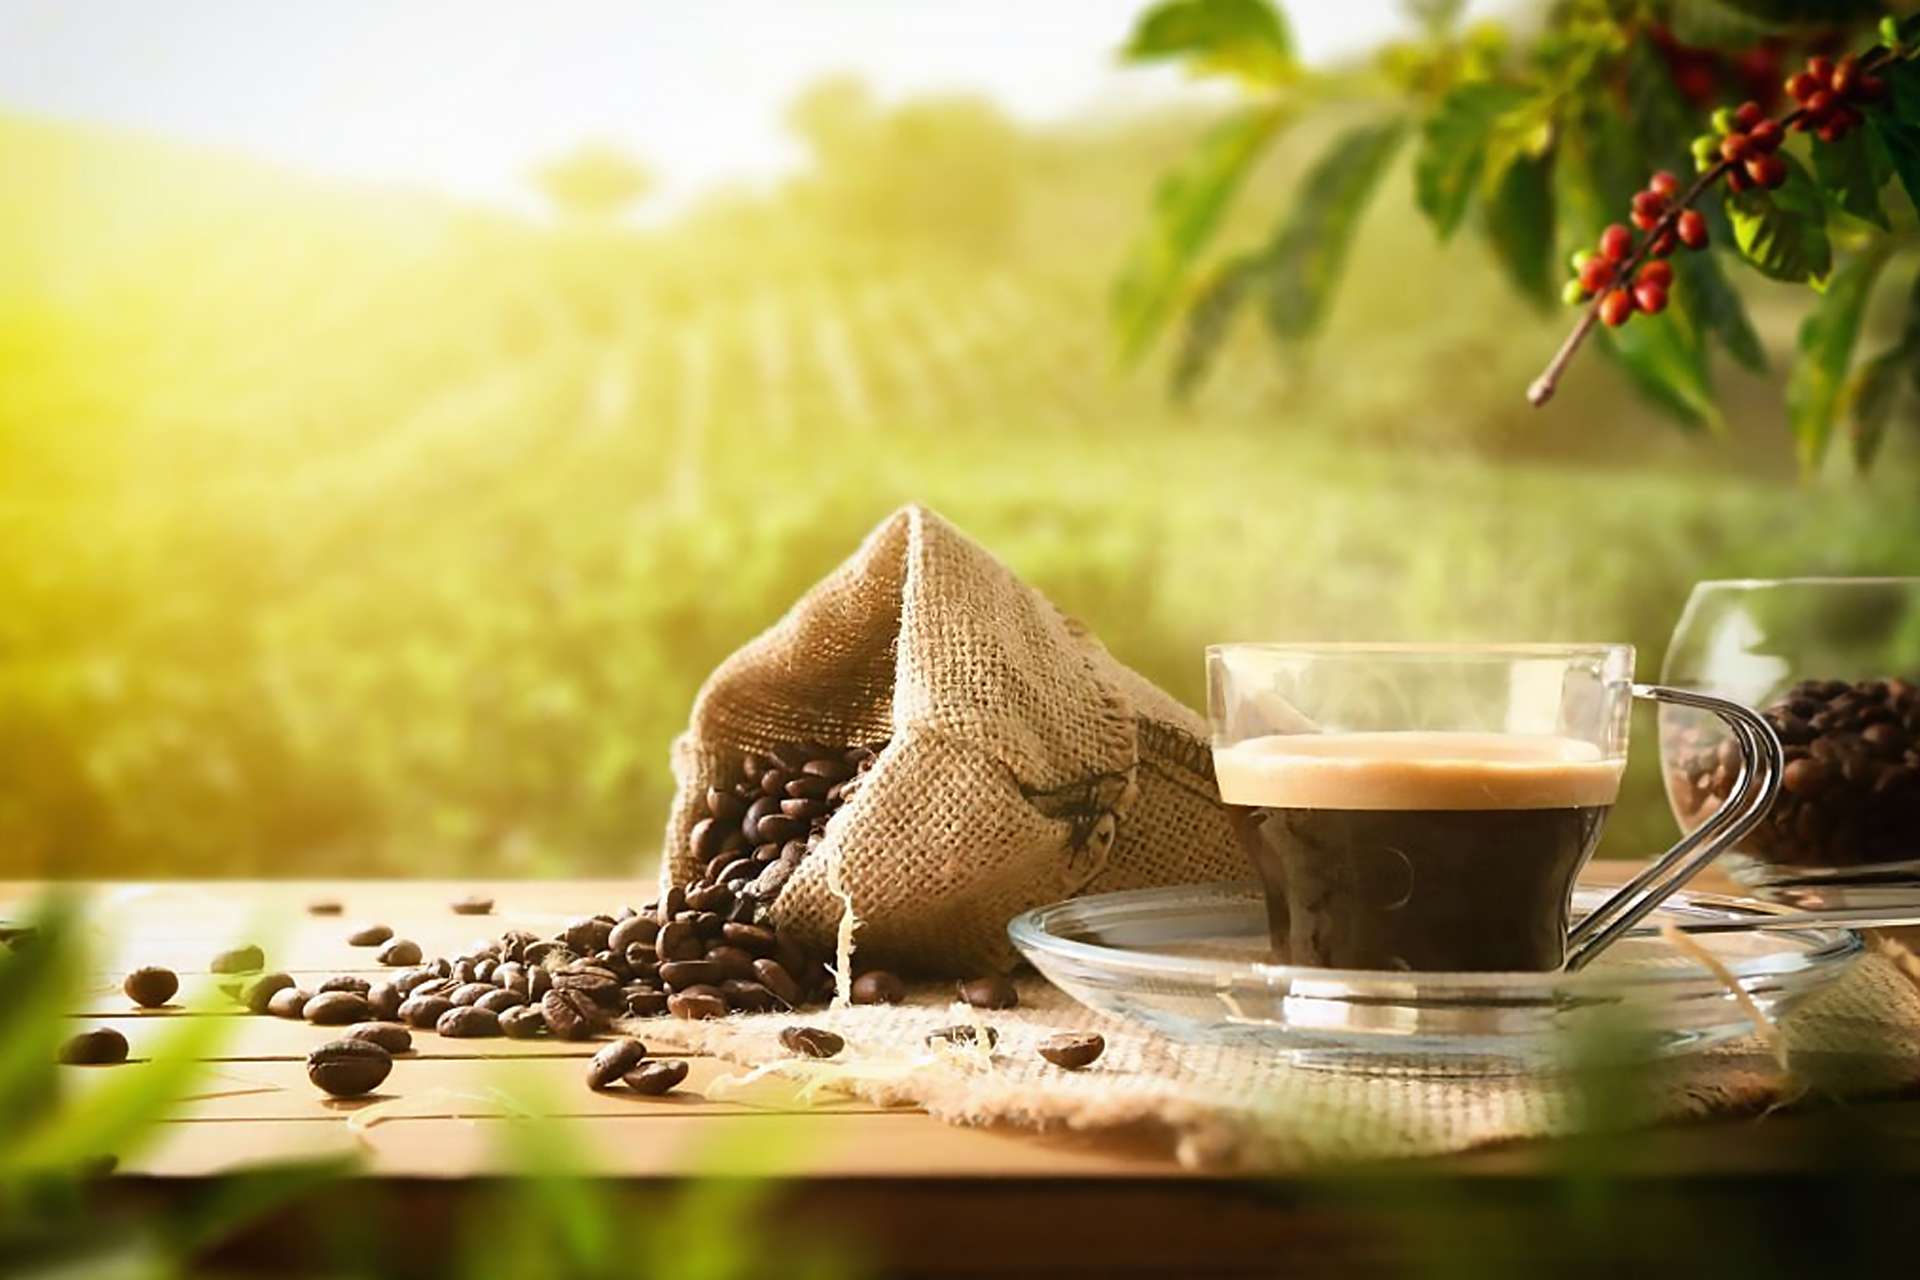 e piante del caffè sono attualmente coltivate soprattutto nel Sud America, in Africa, in India e nel sud-est asiatico